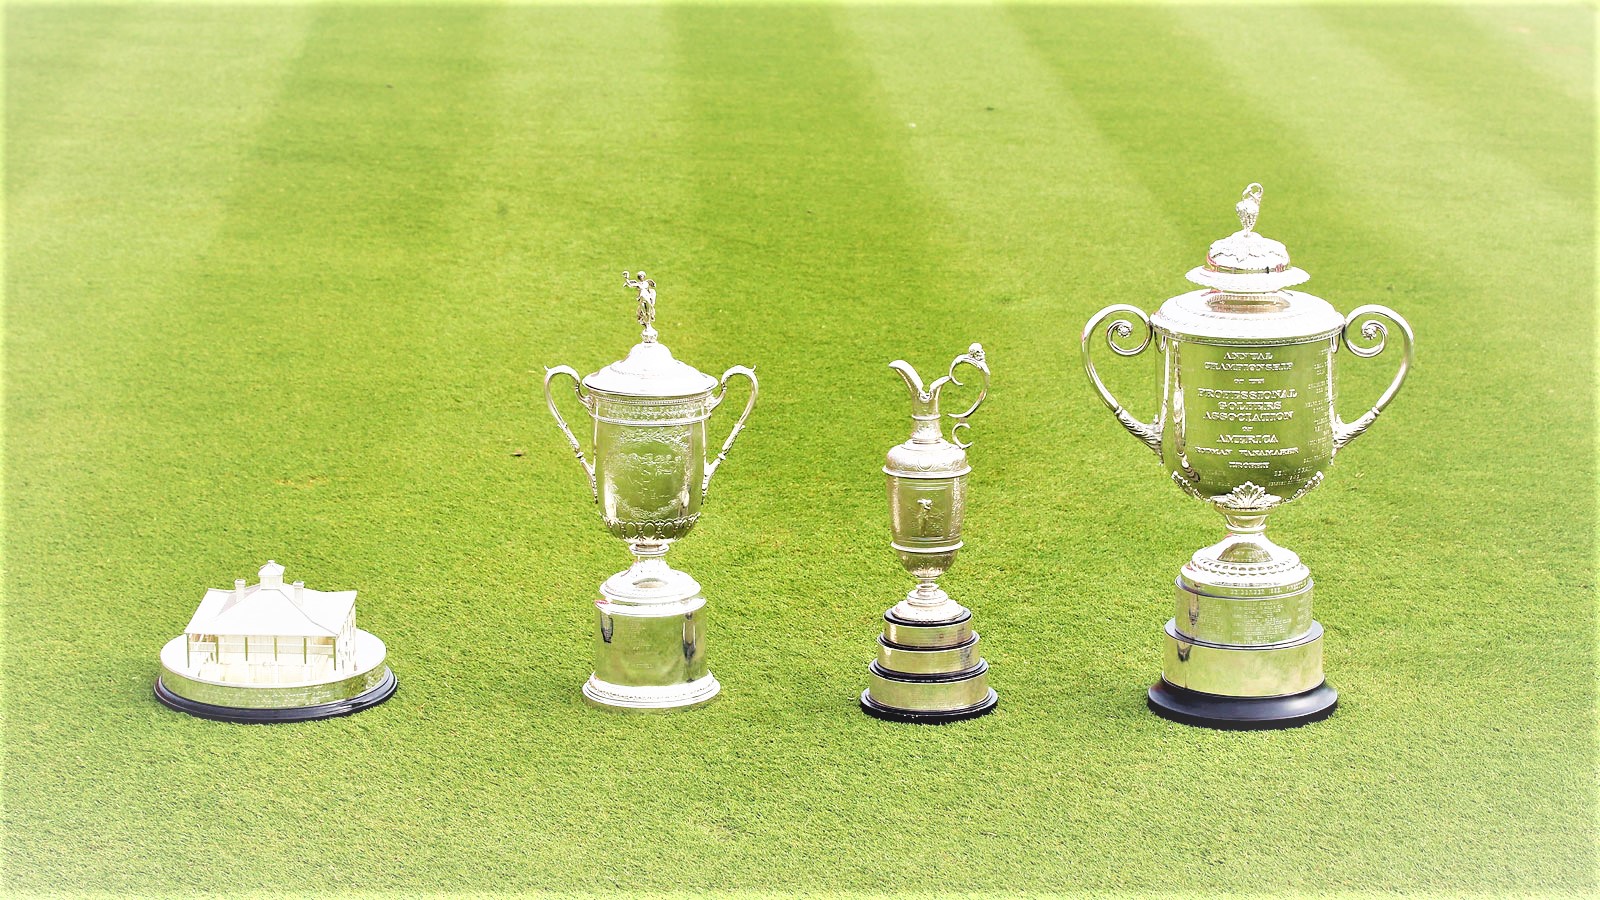 Das sind sie - die vier Pokale der Majors (v.l.): Masters, US Open, The Open und PGA Championship. © David Cannon/Getty Images